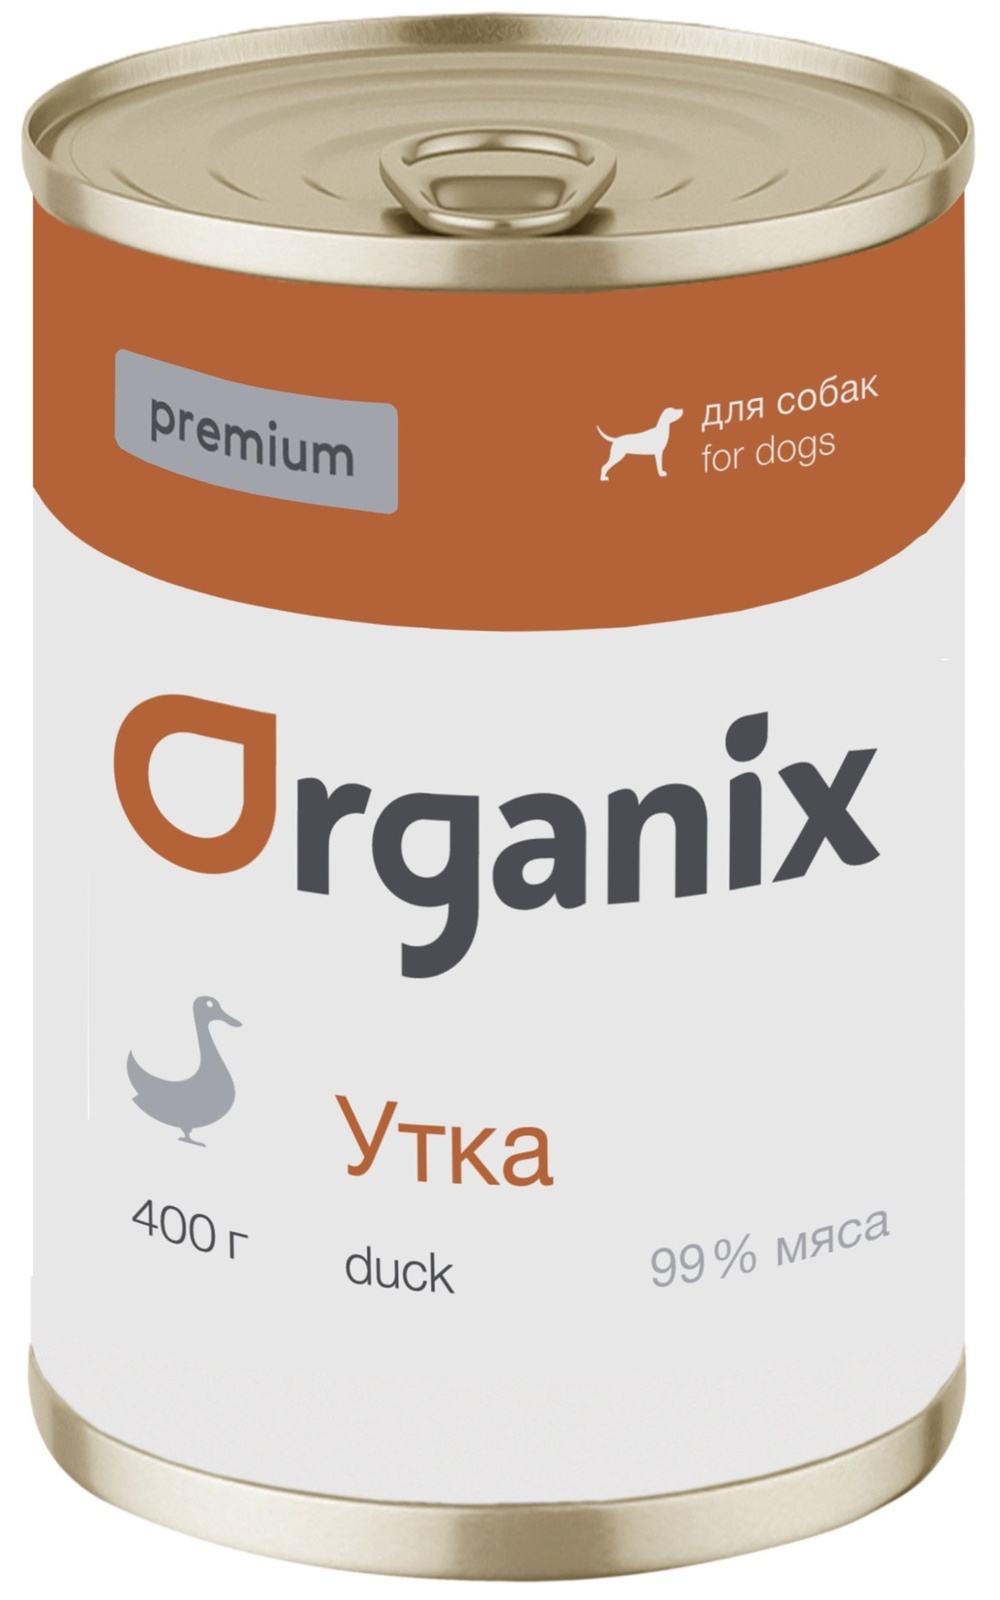 Organix консервы Organix монобелковые премиум консервы для собак, с уткой (100 г) organix консервы organix консервы для собак ягненок с рубцом и морковью 100 г